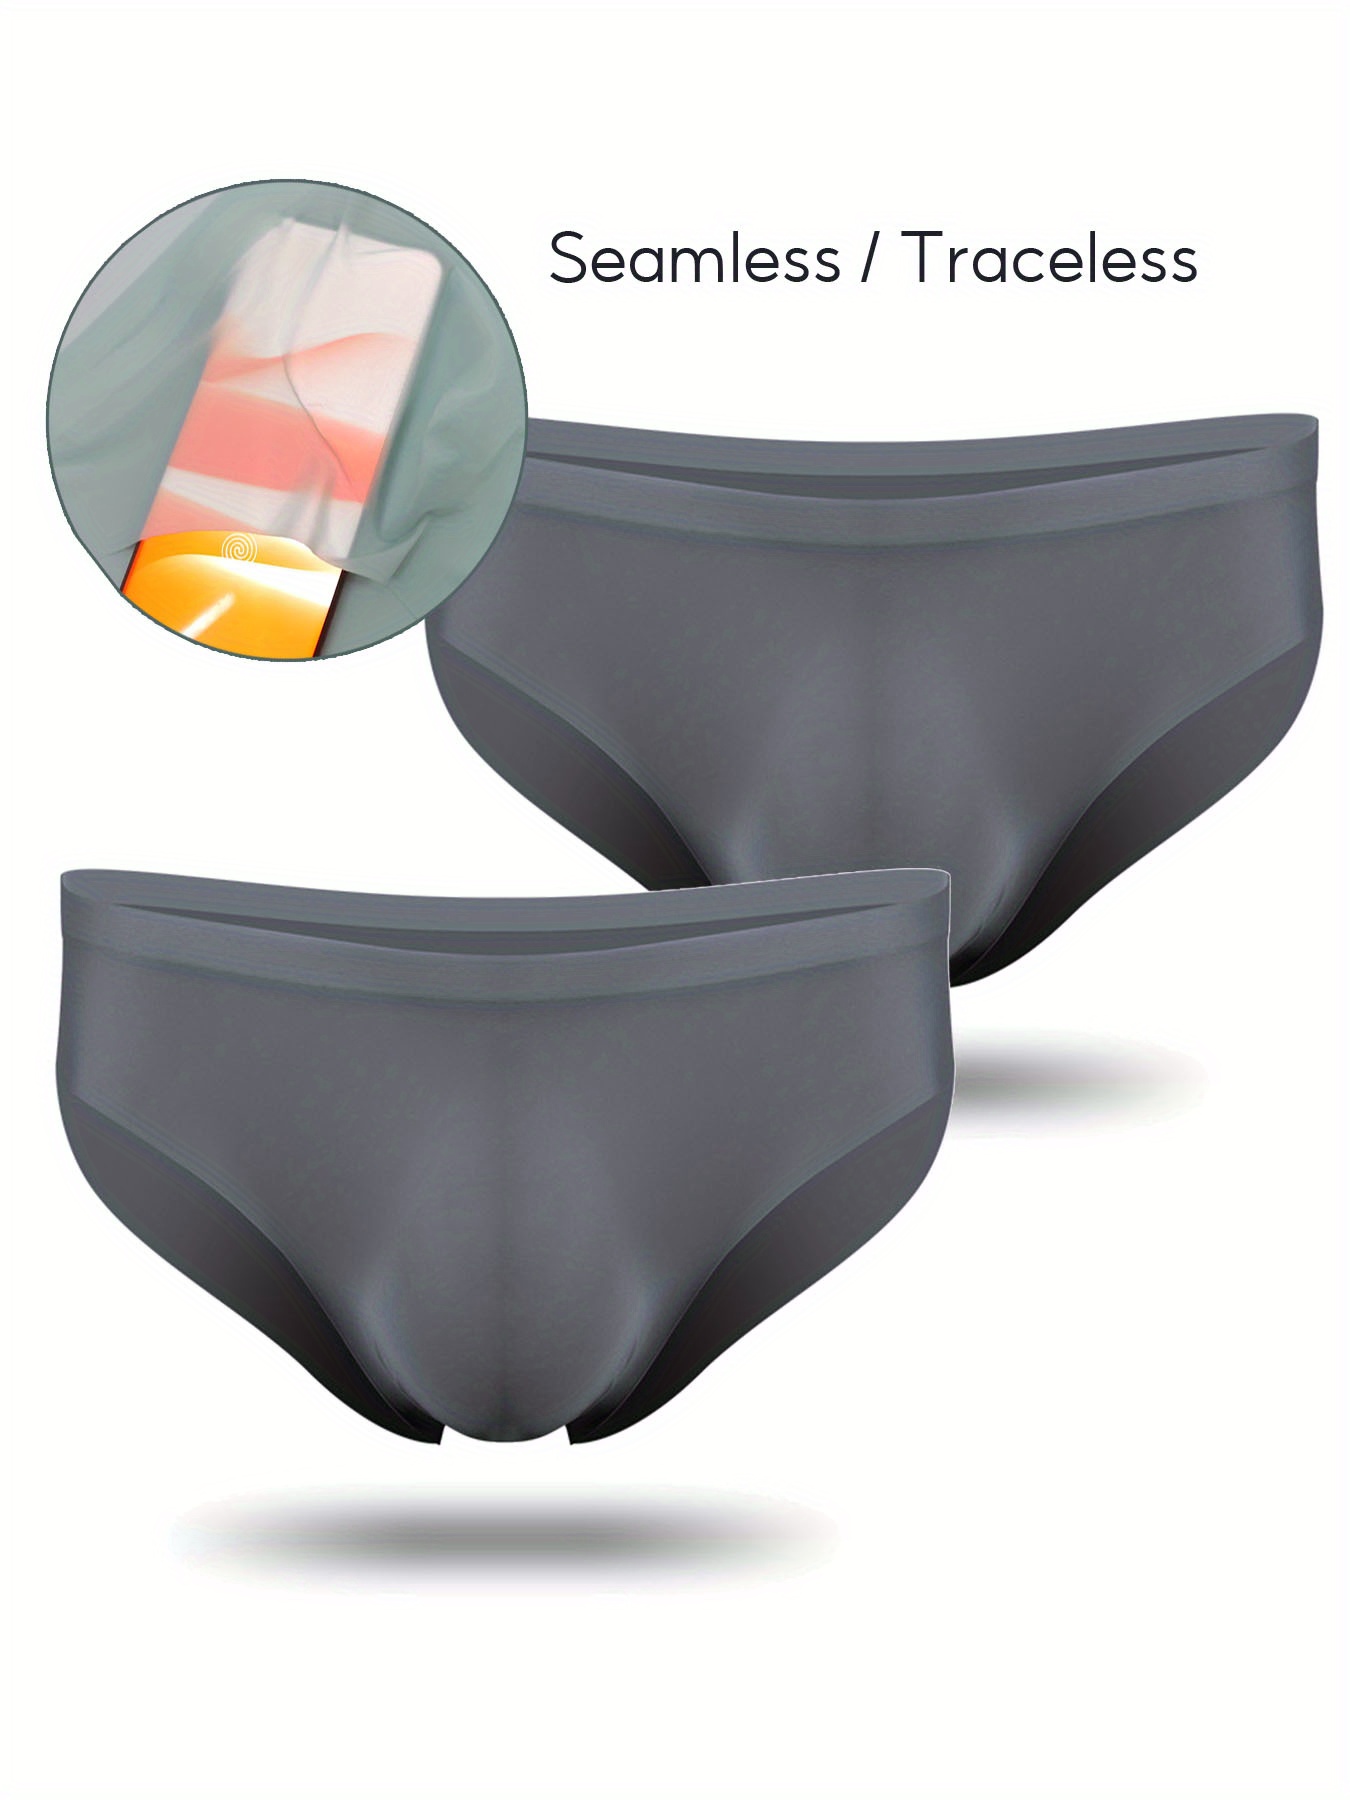 Men Panties Sexy U Convex Men Panties Underwear Protective Sweat-absorbent  : : Clothing, Shoes & Accessories